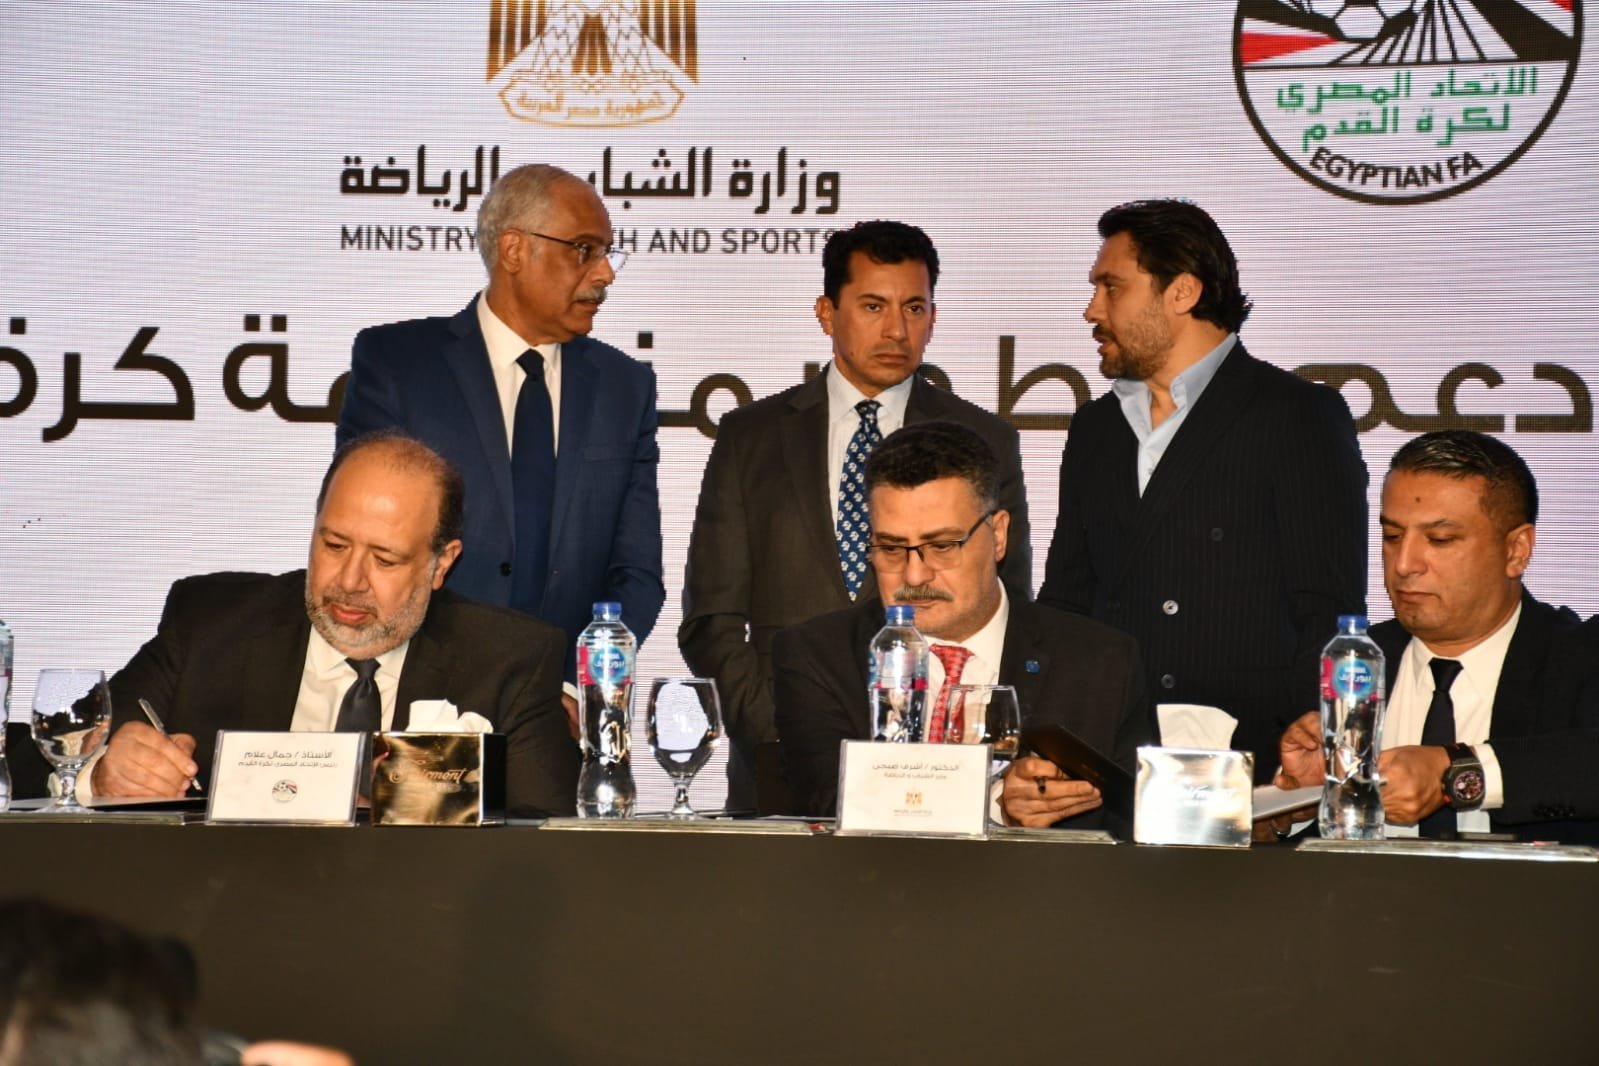 الإعلان عن أكبر مبادرة لدعم وتطوير منظومة كرة القدم المصرية في حضور وزير الرياضة